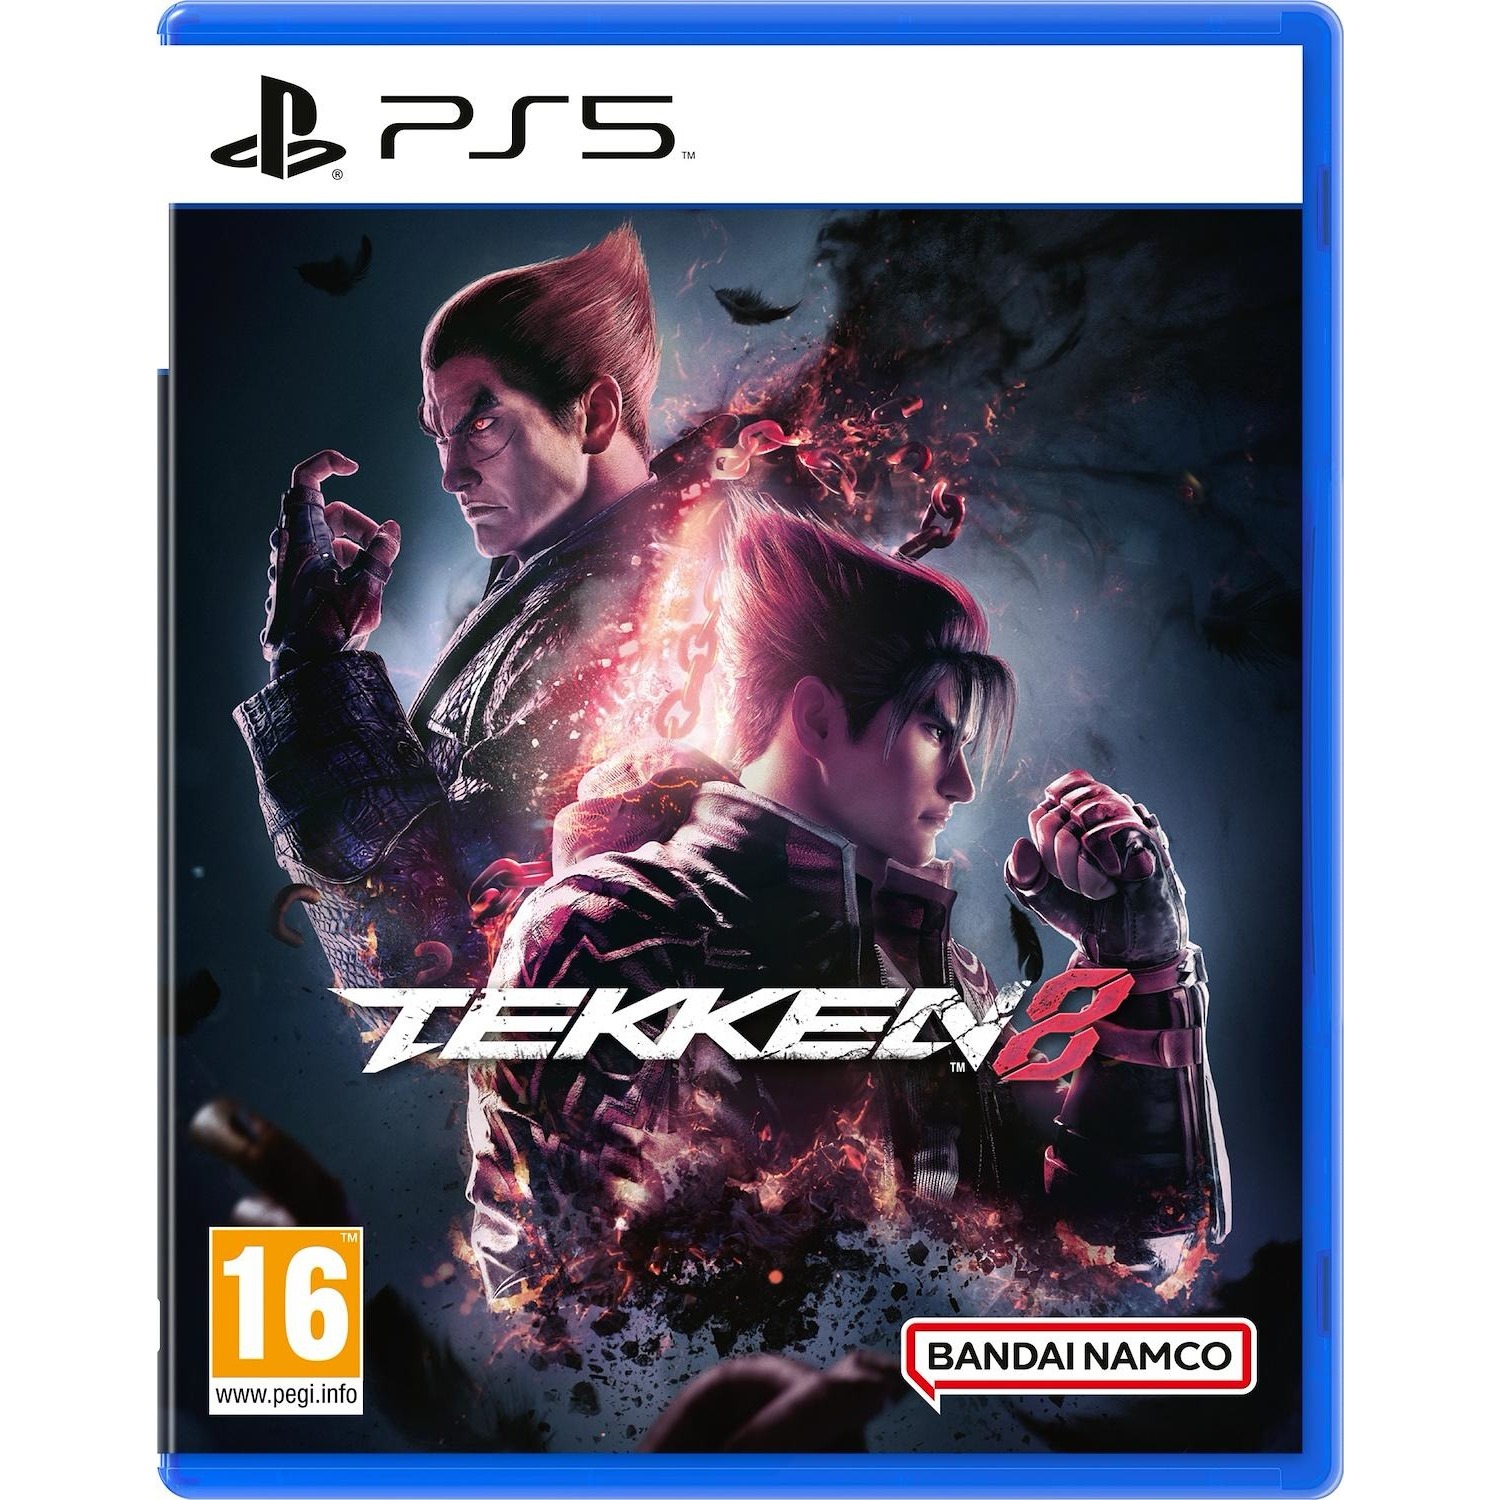 Immagine per Gioco PS5 Tekken 8 Standard Edition da DIMOStore